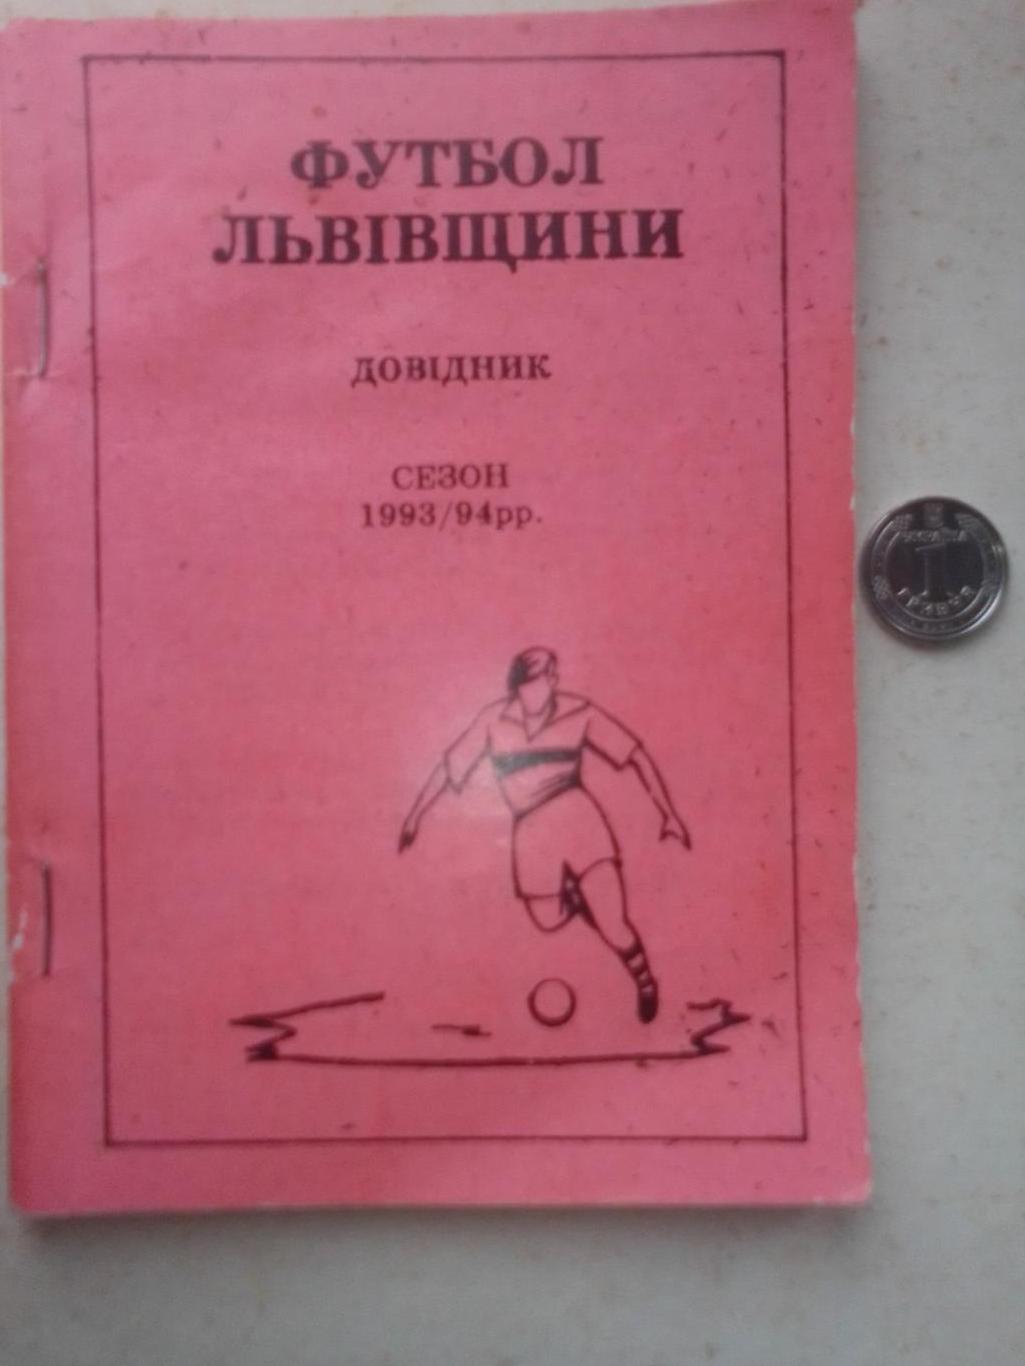 Справочник: Футбол Львовщины 1993/94 гг.